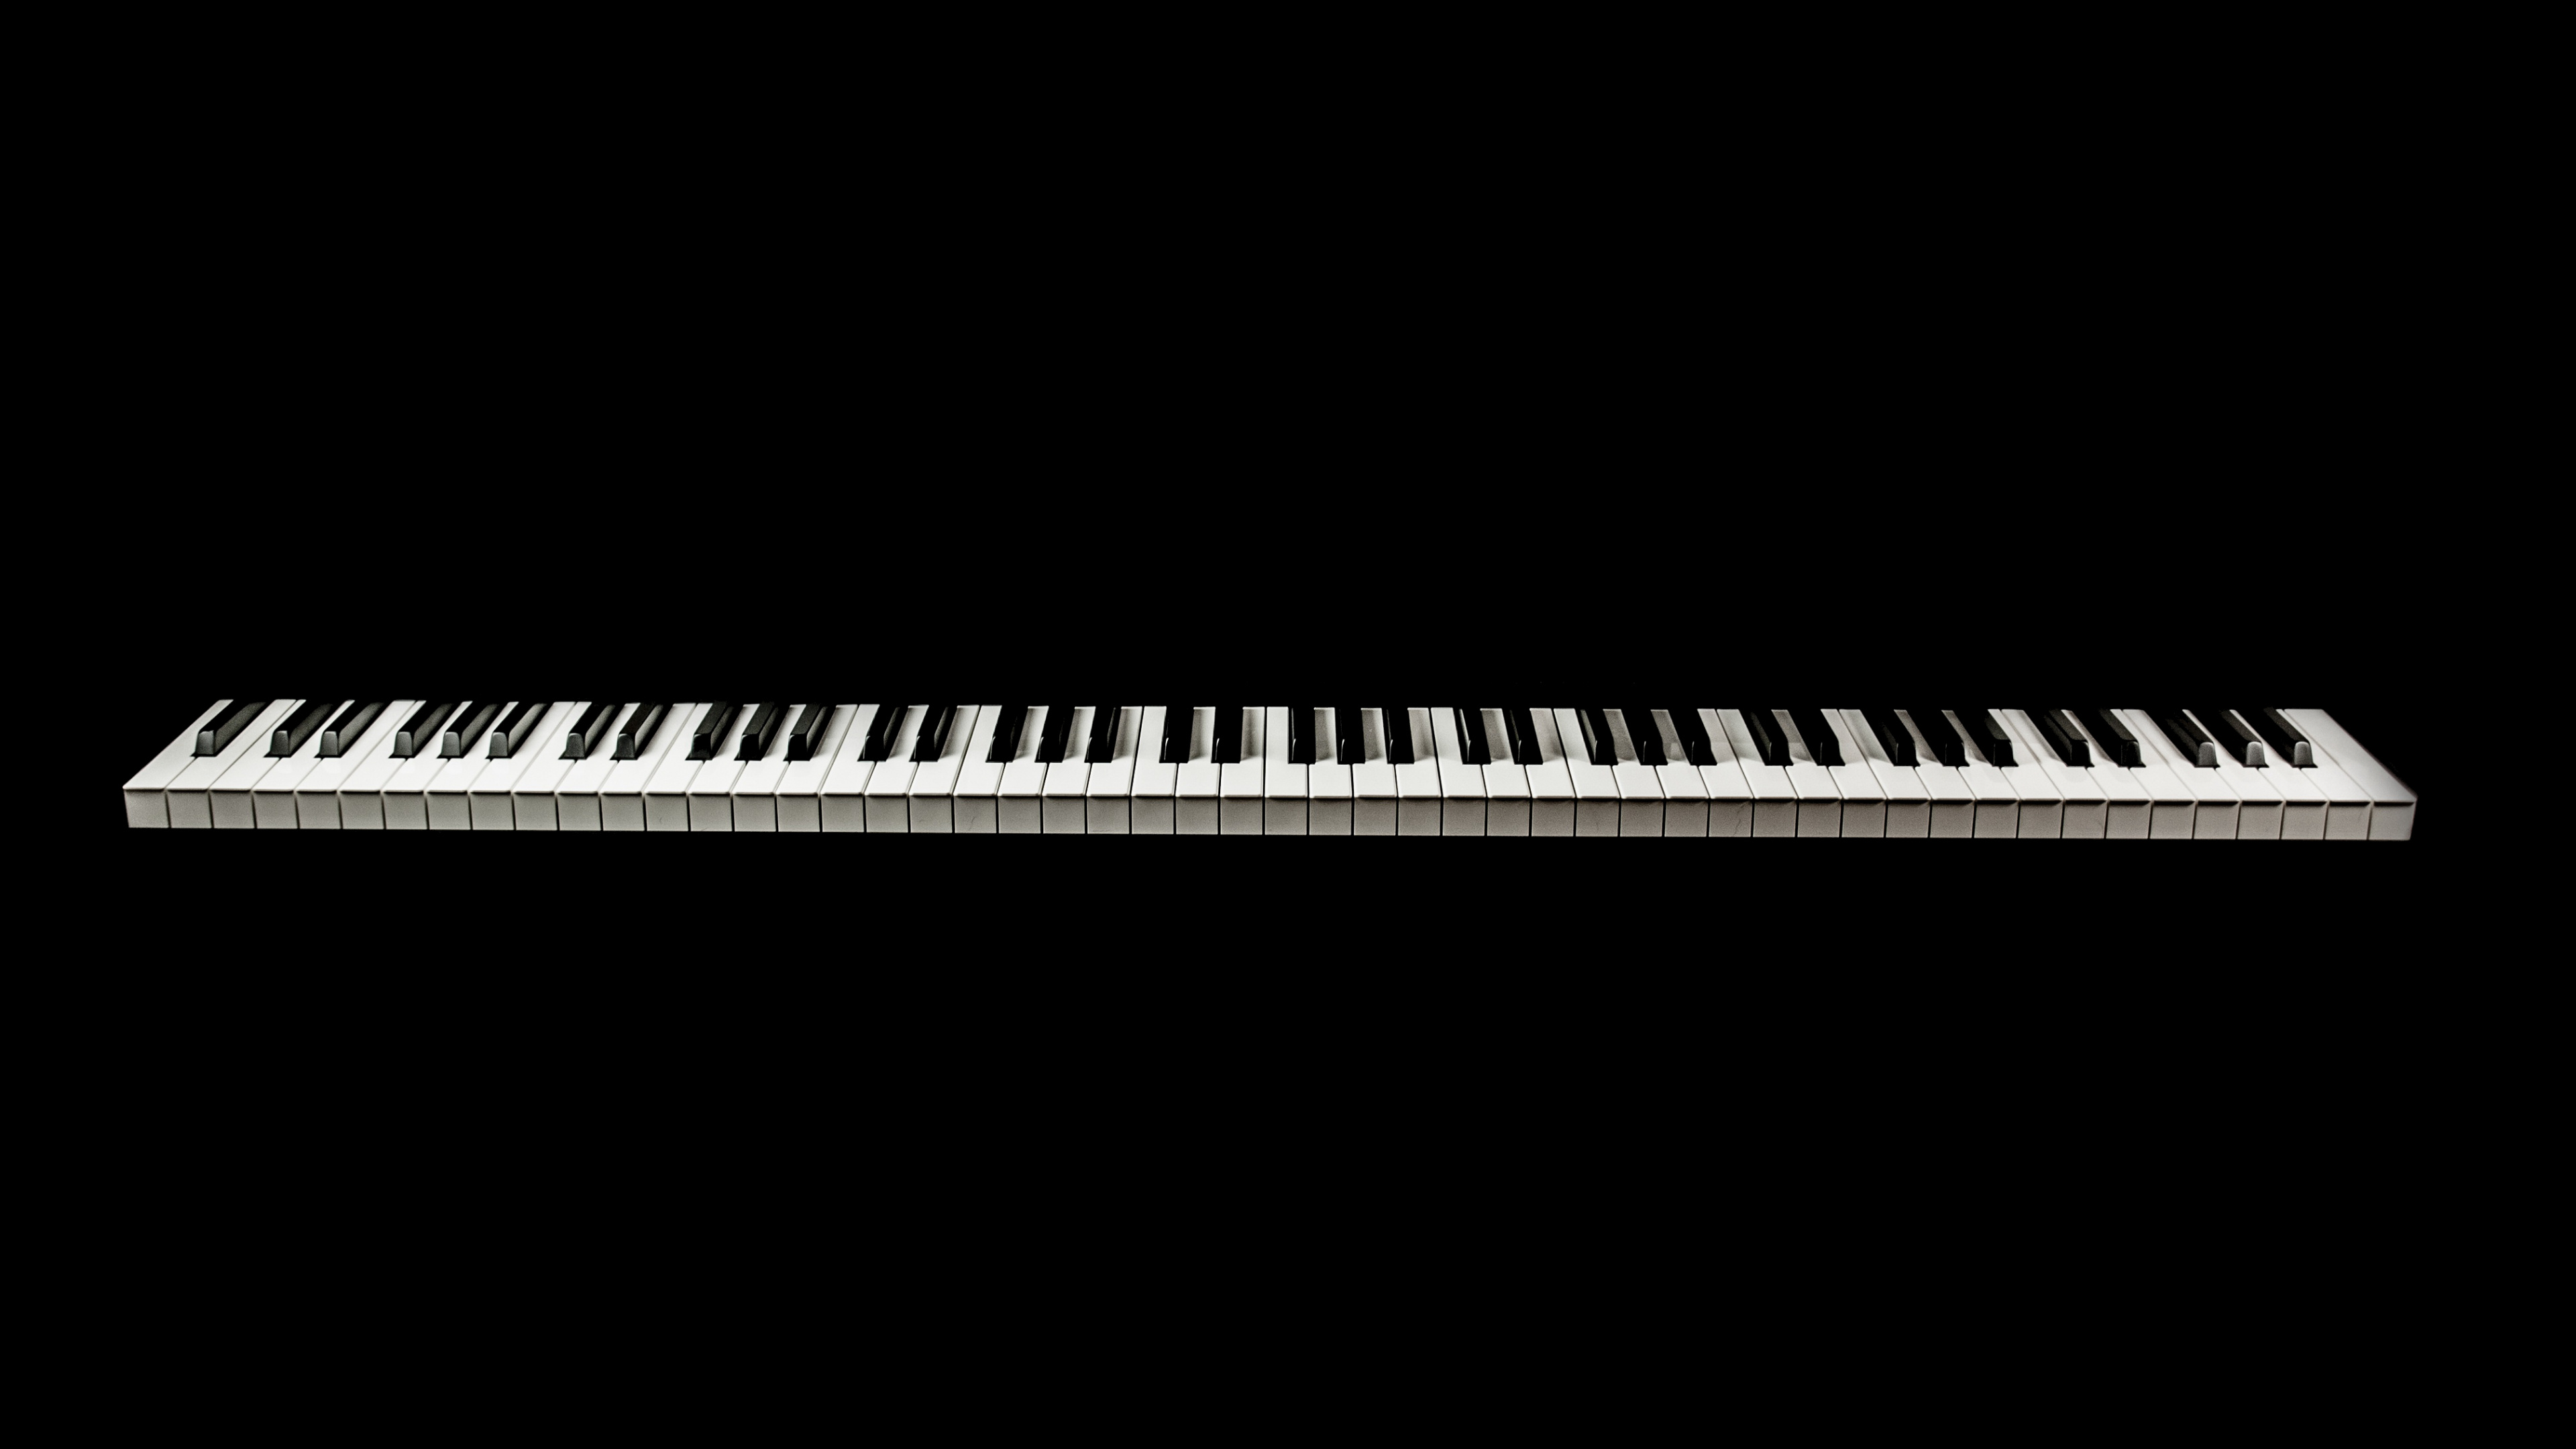 音乐键盘, 数字钢琴, 电子琴, 钢琴, 键盘 壁纸 3840x2160 允许